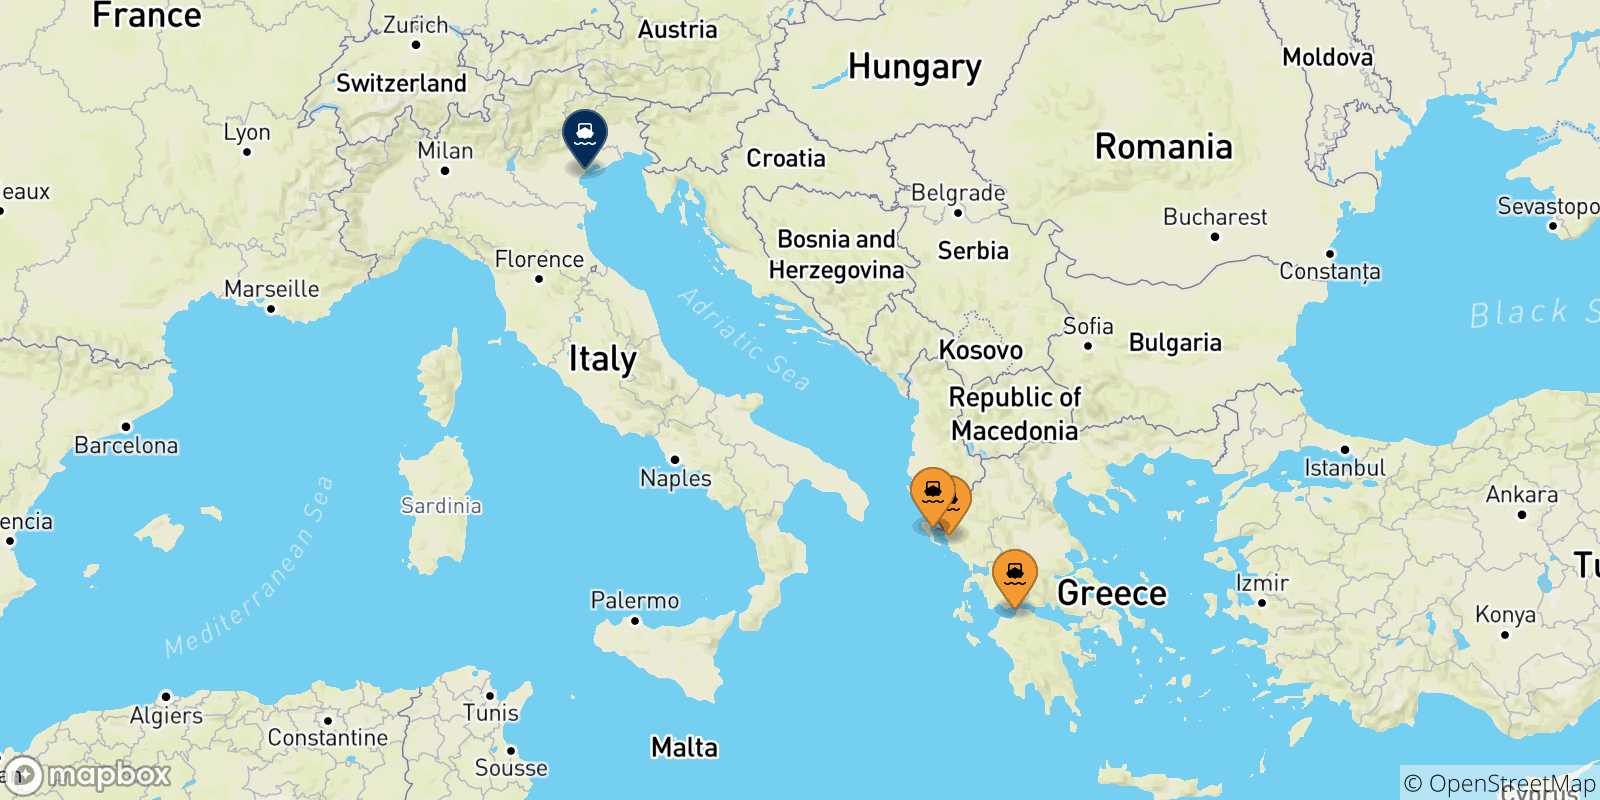 Mappa delle possibili rotte tra la Grecia e Venezia